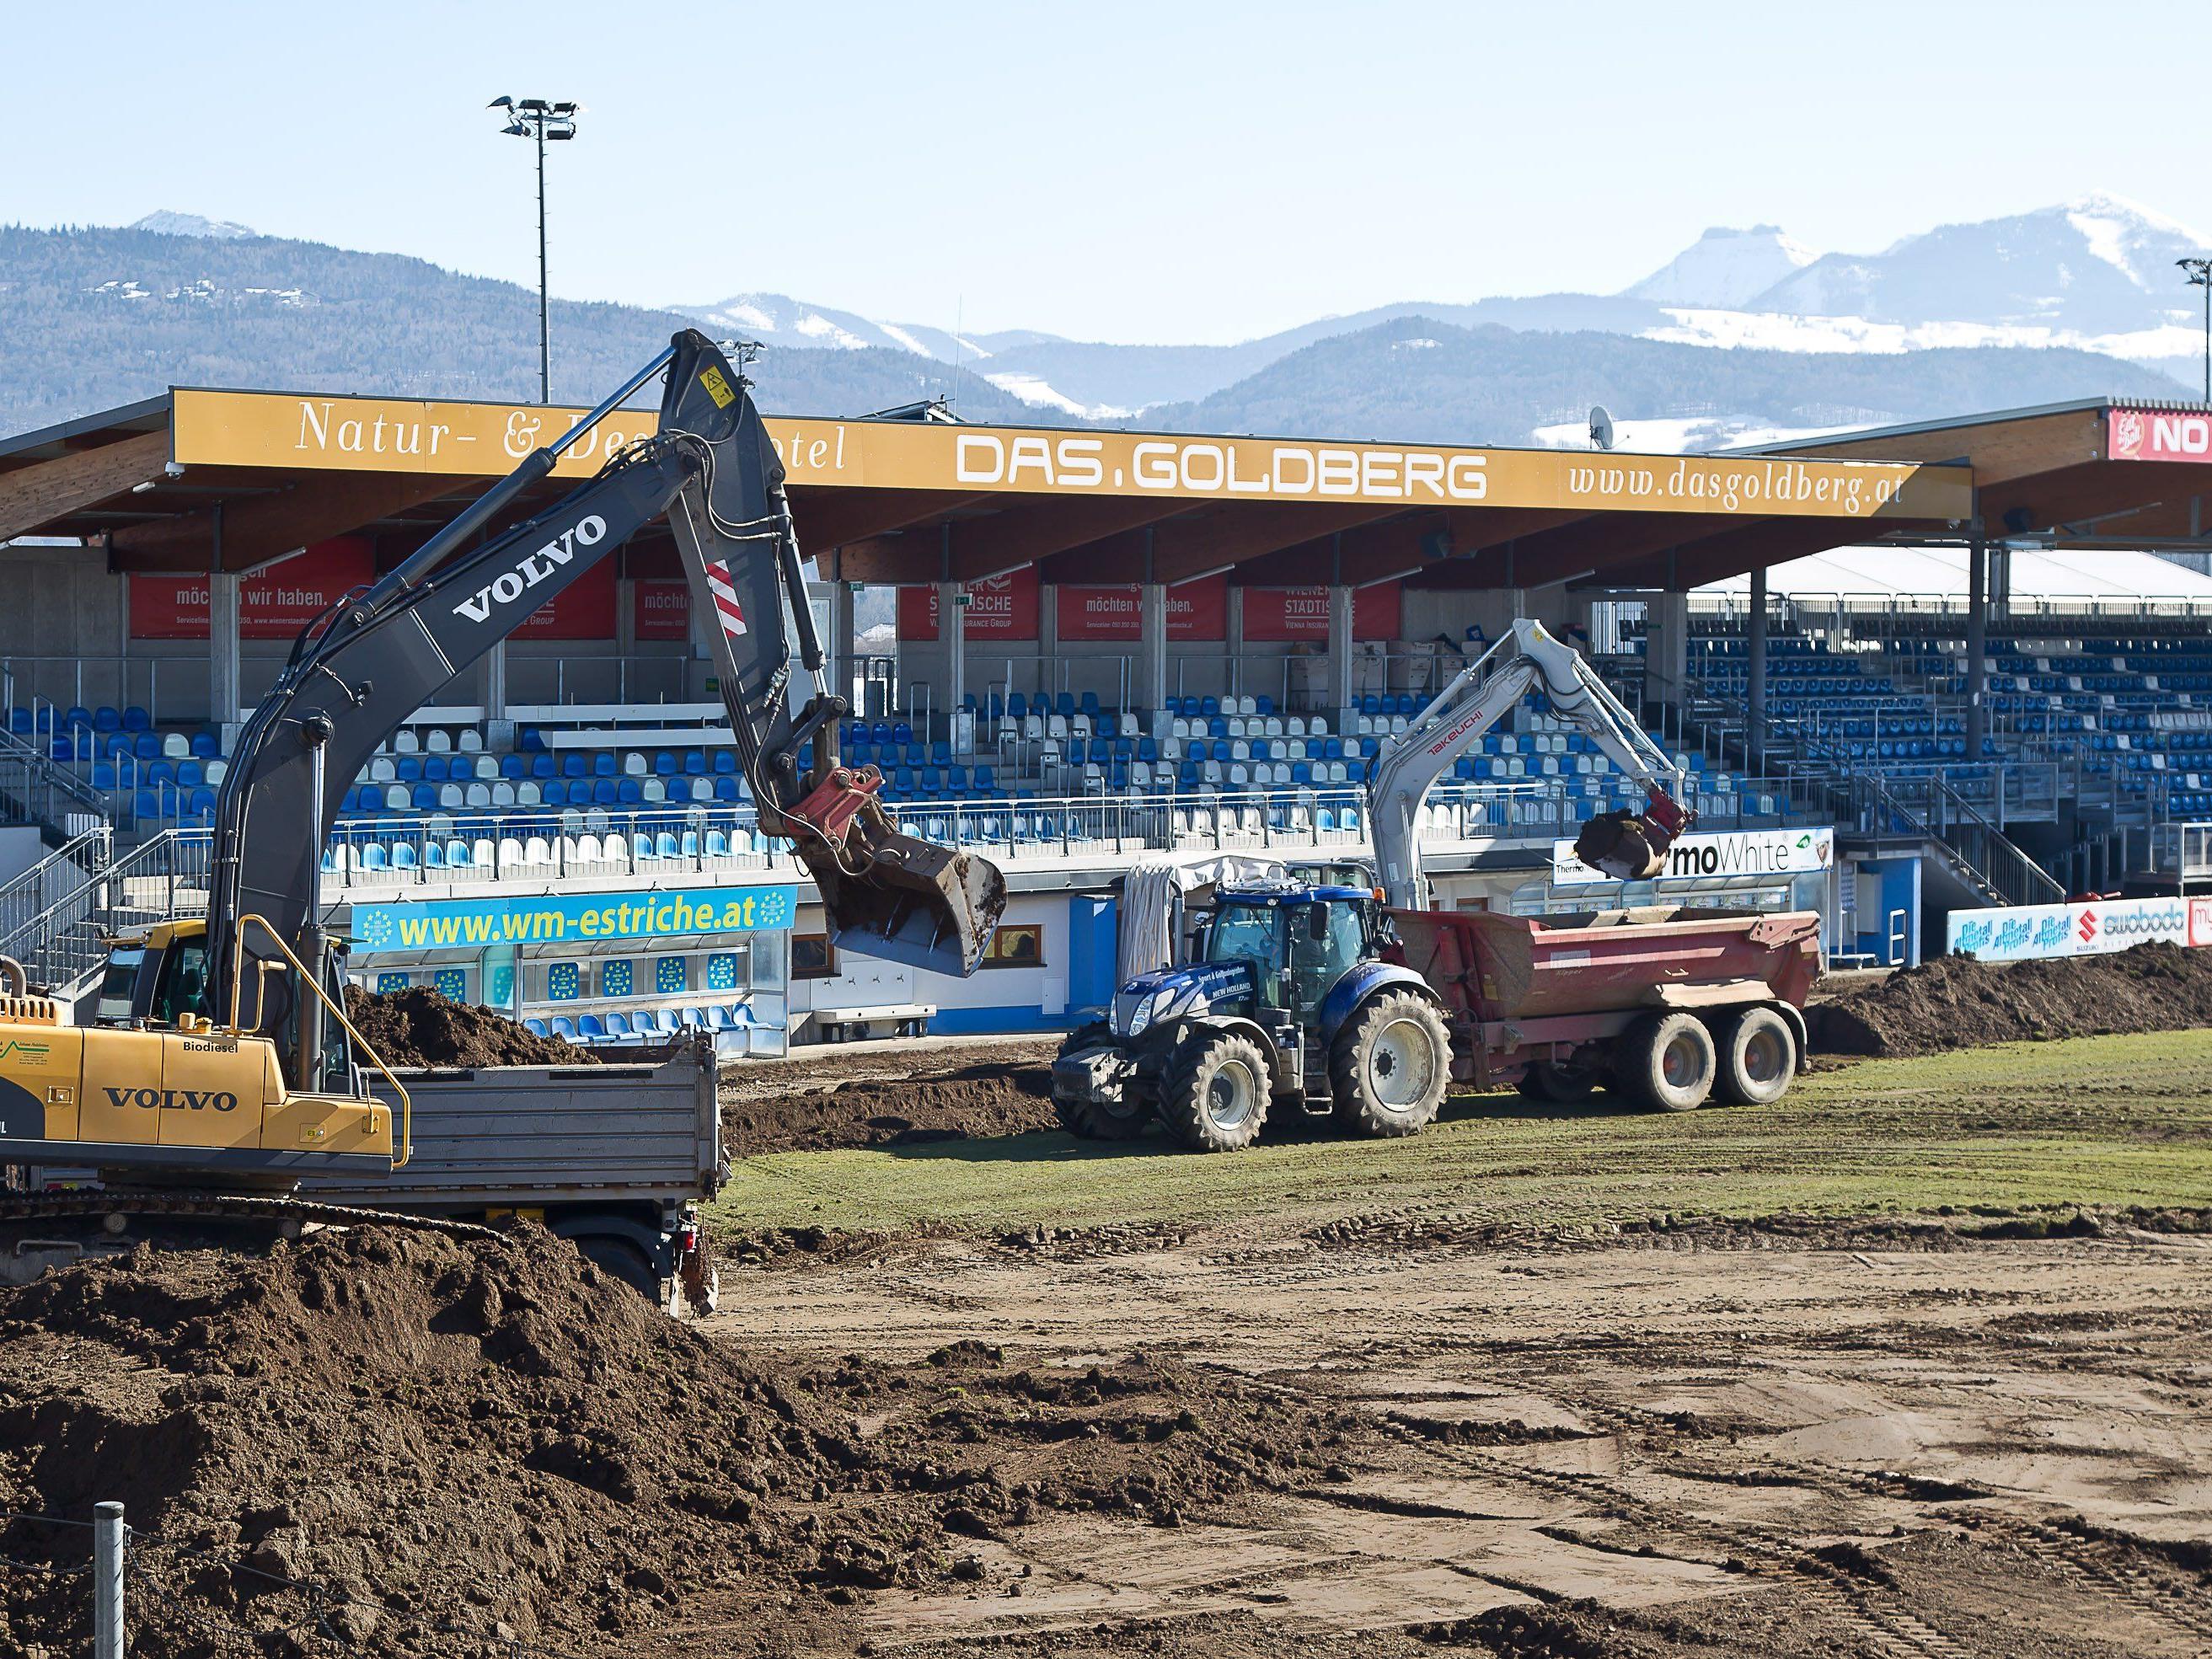 Der SV Grödig baut derzeit eine Rasenheizung ins DAS.GOLDBERG Stadion ein.